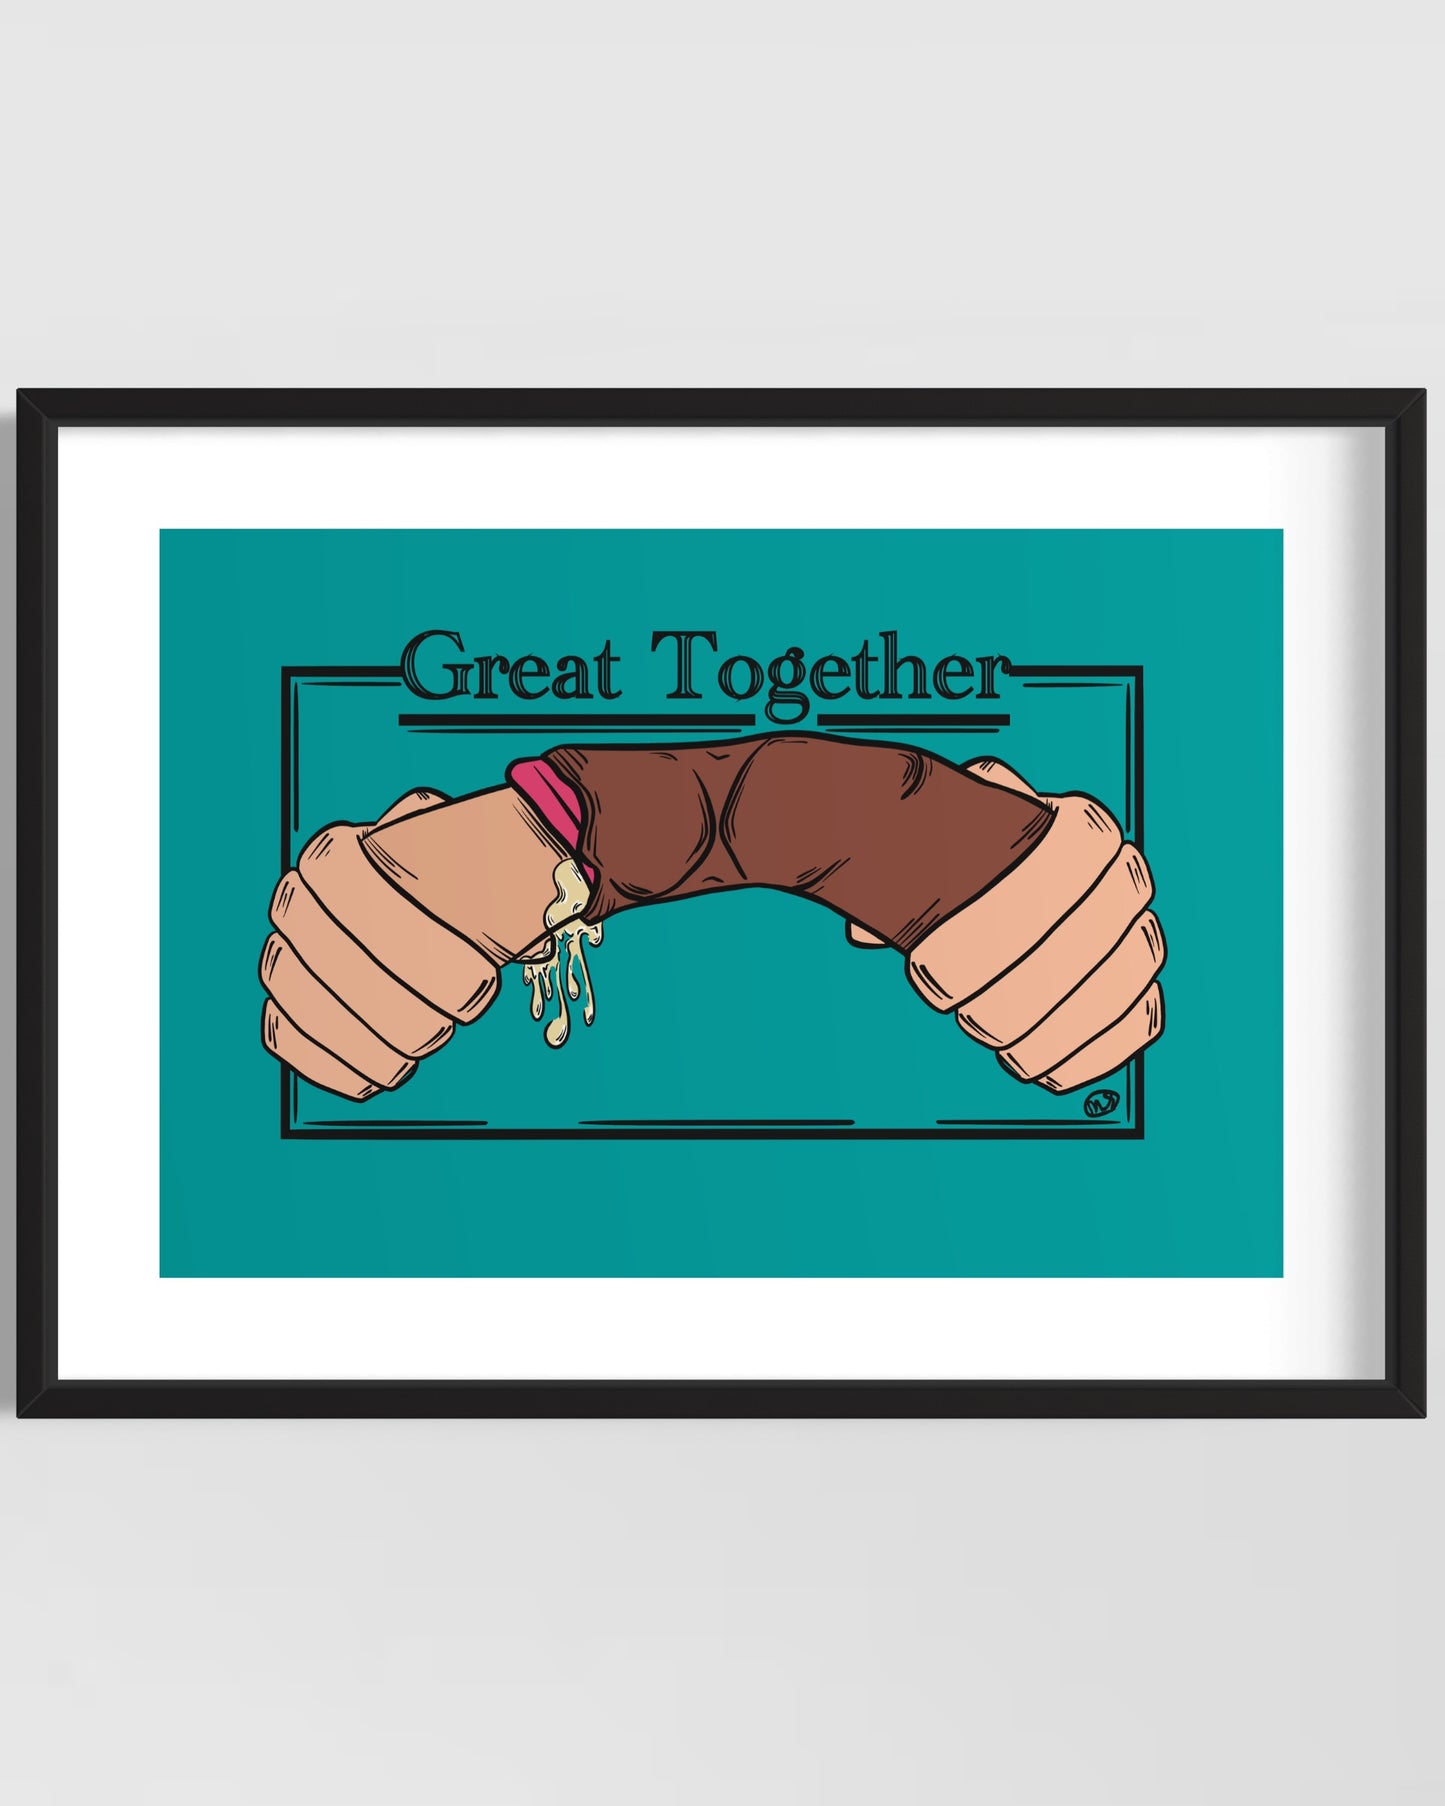 Great Together - Framed Art